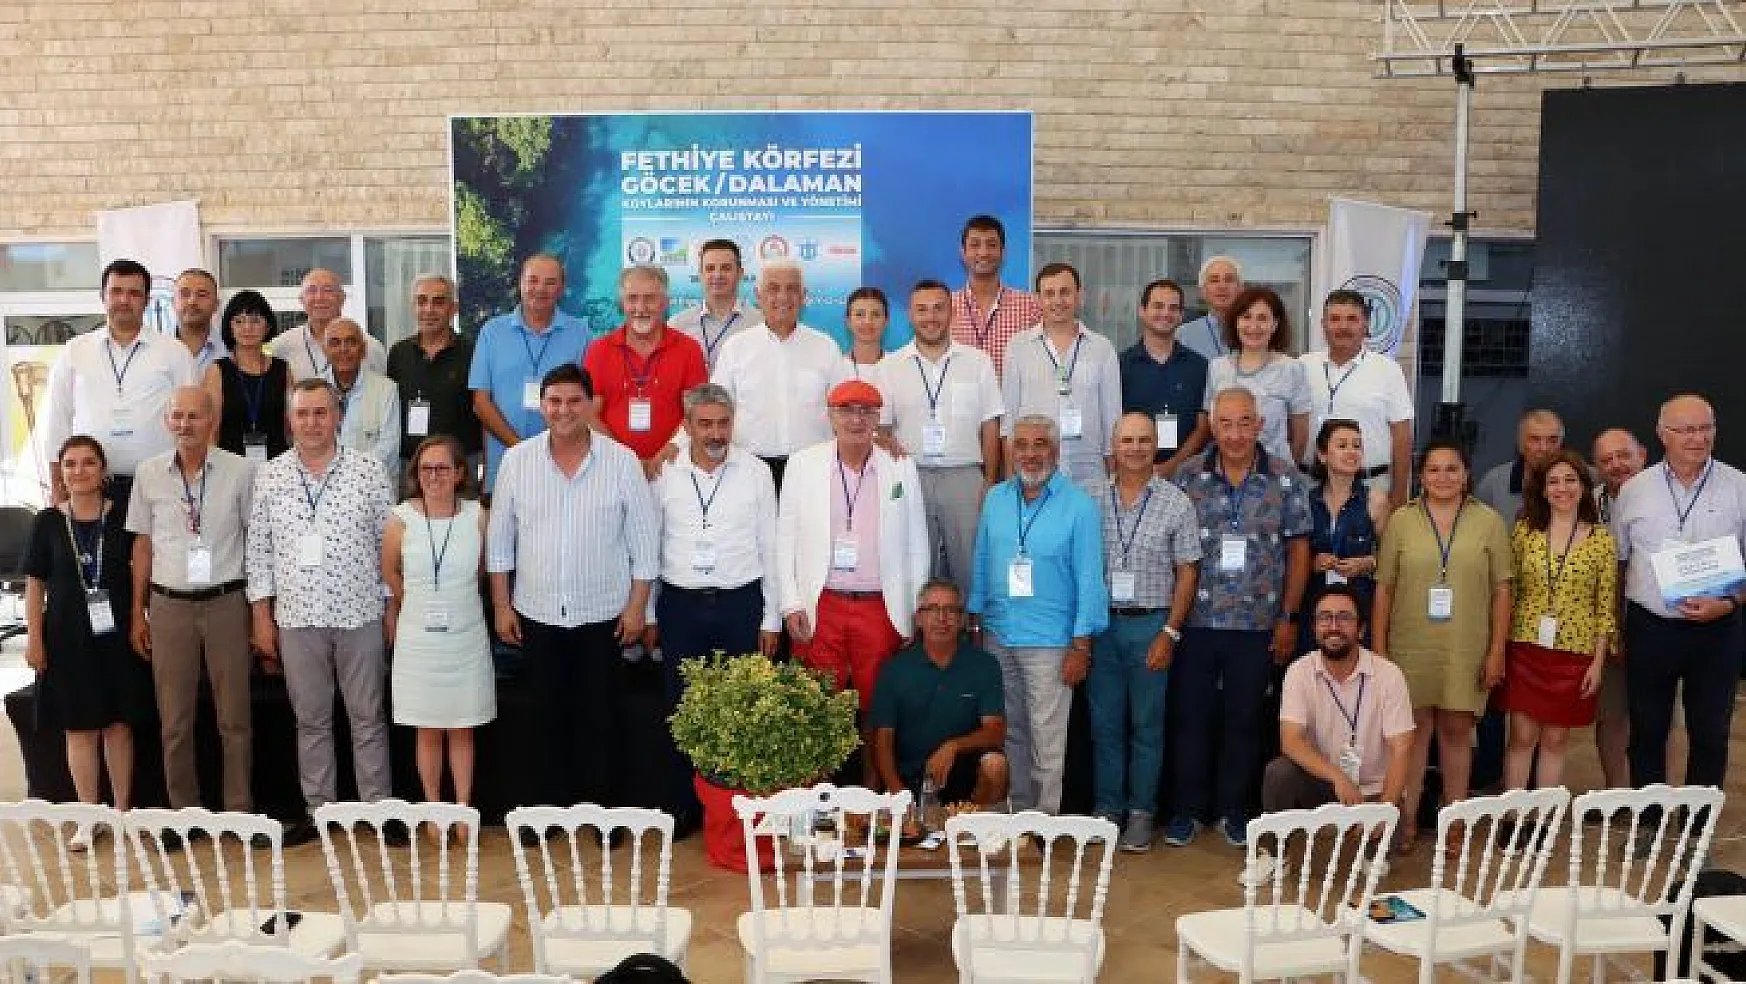 Fethiye Körfezi, Göcek-Dalaman Koyları Çalıştayı Yoğun Katılımla Yapıldı